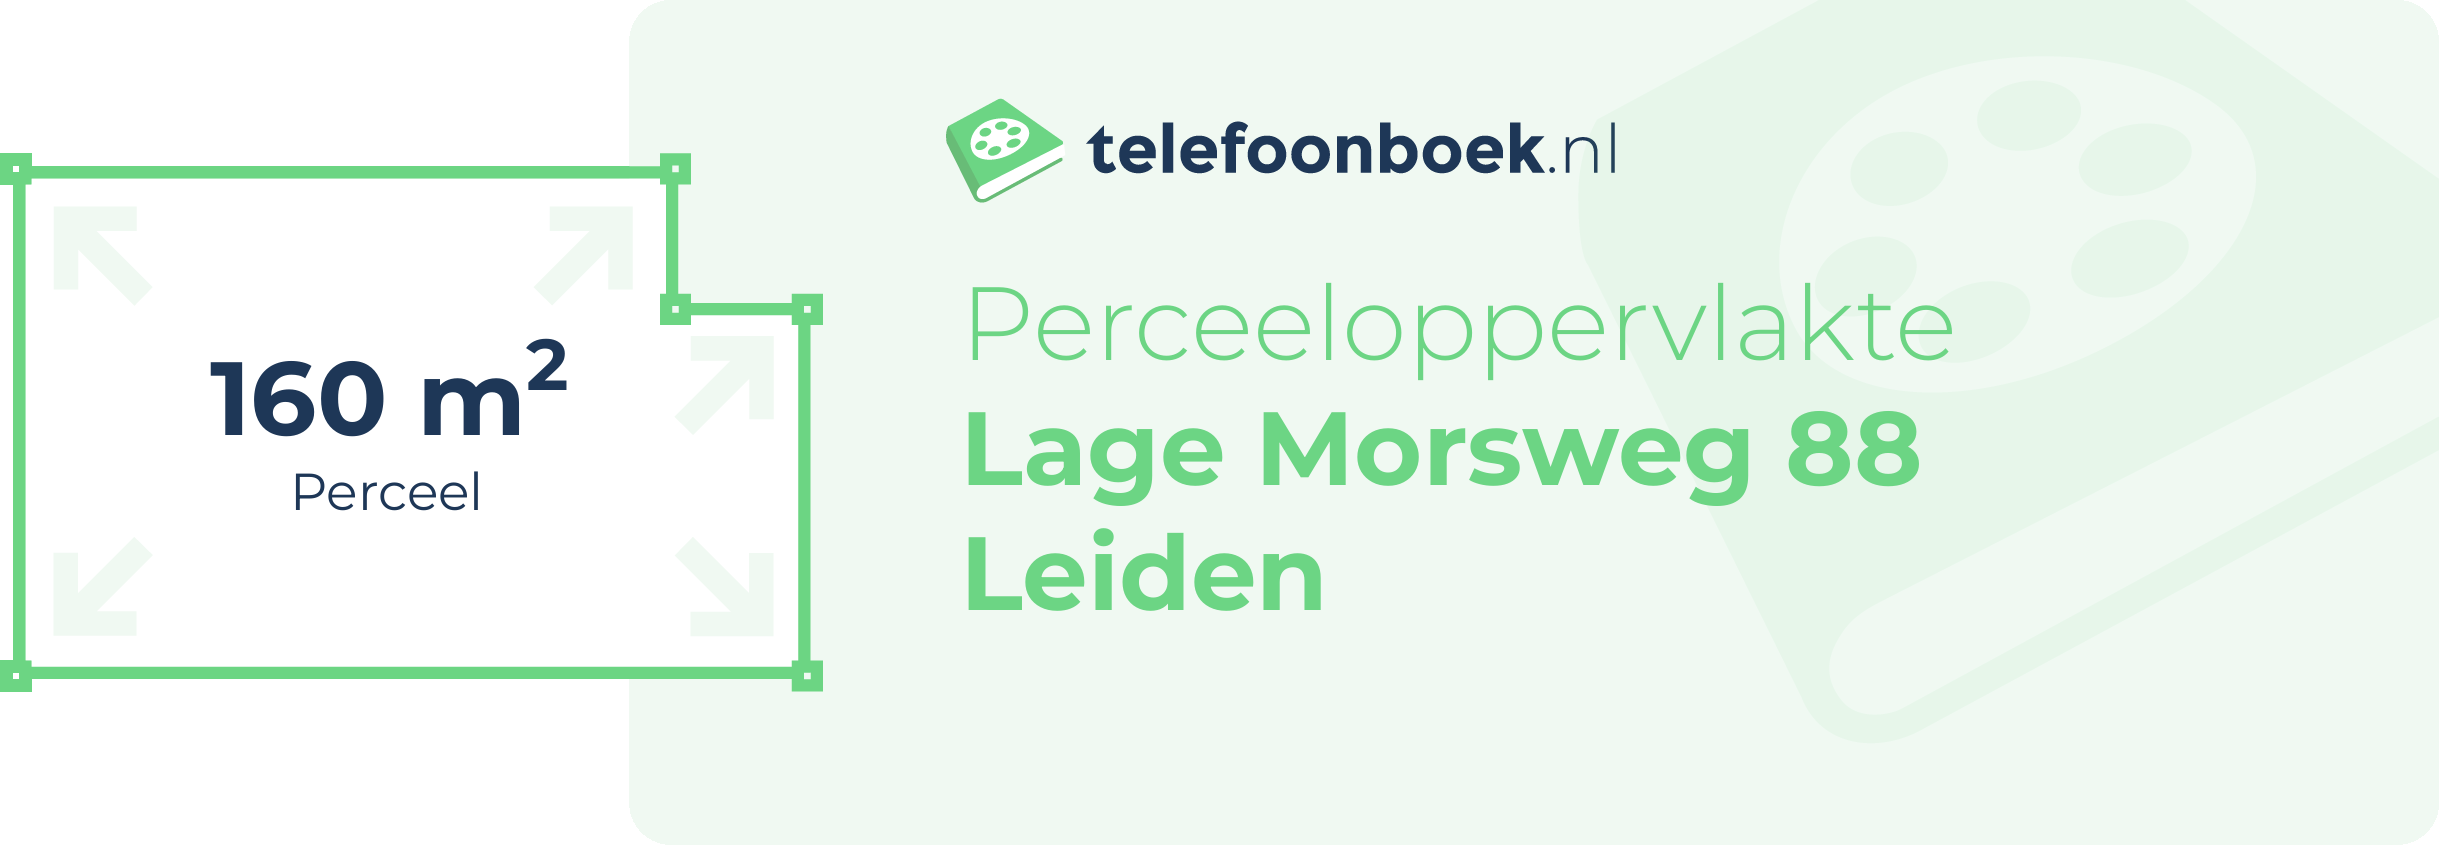 Perceeloppervlakte Lage Morsweg 88 Leiden